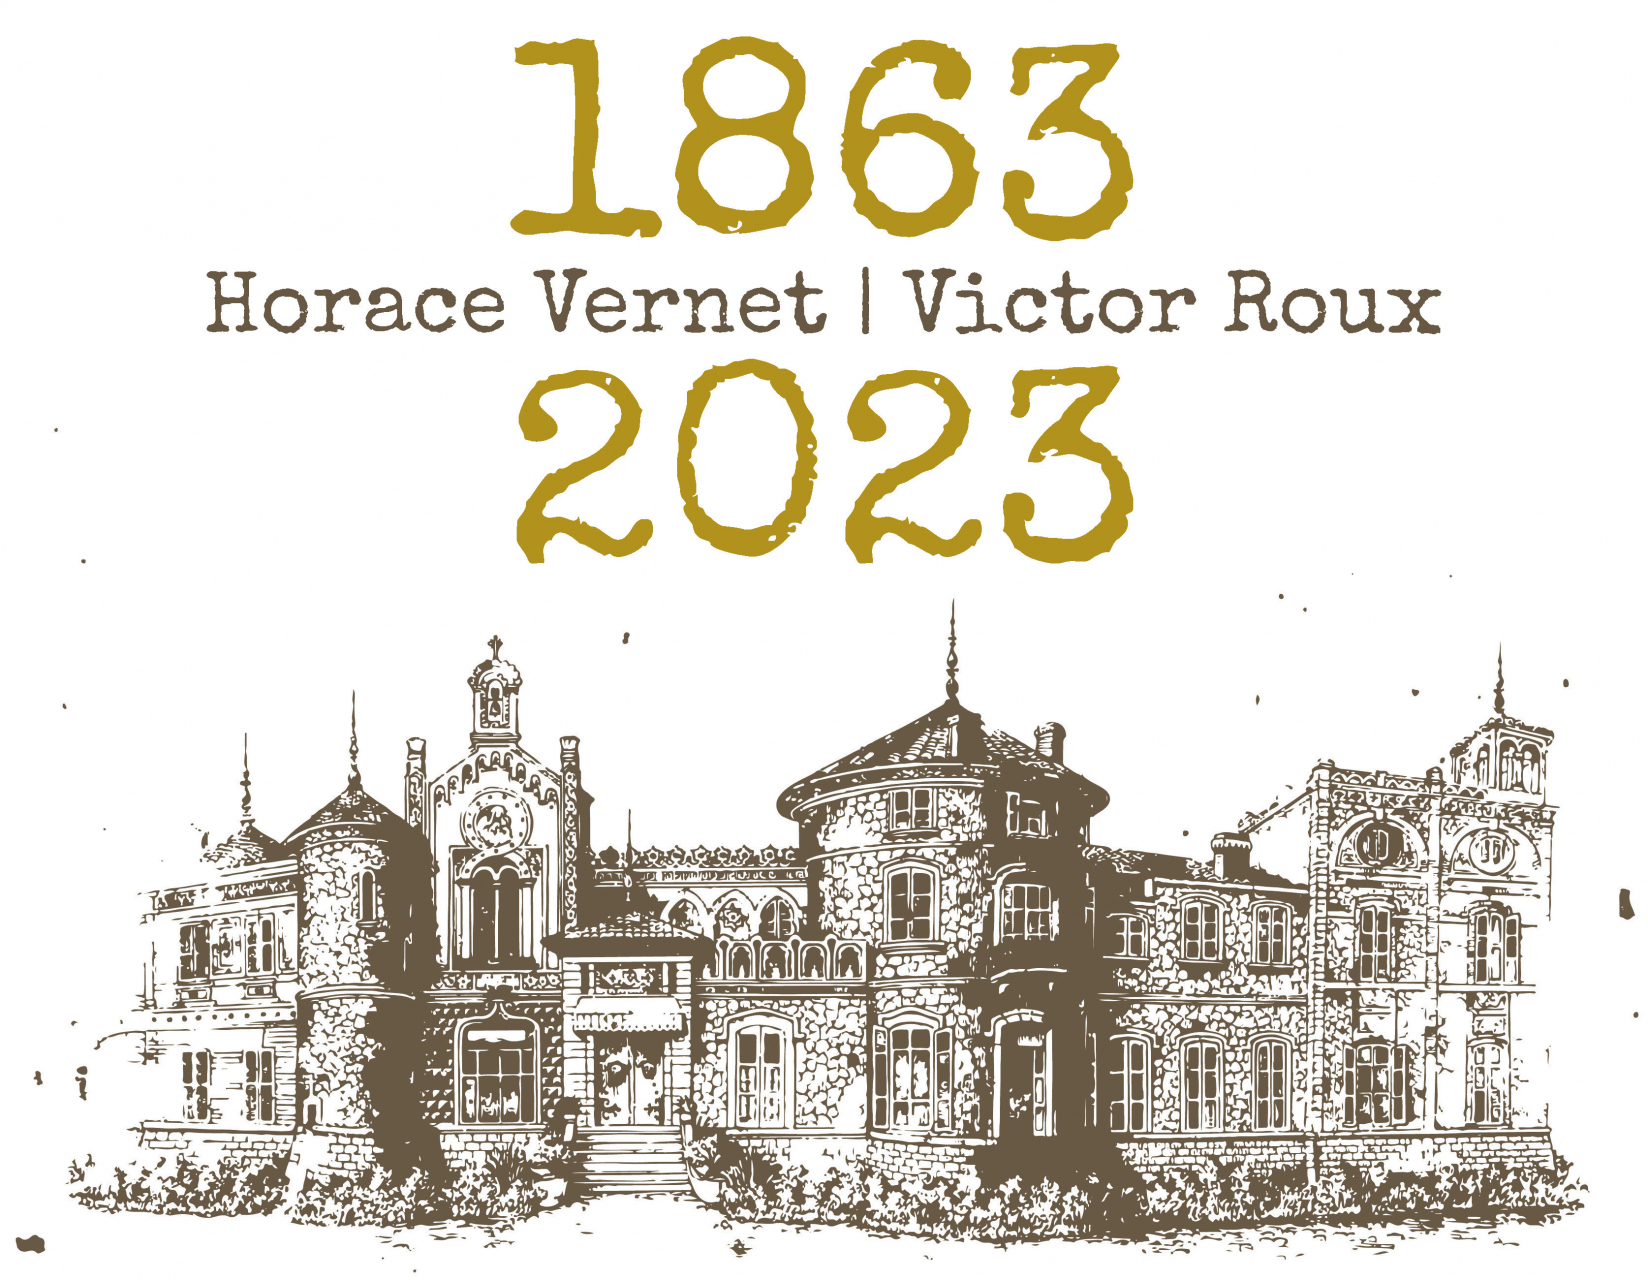 Horace Vernet - Victor Roux, 1863-2023